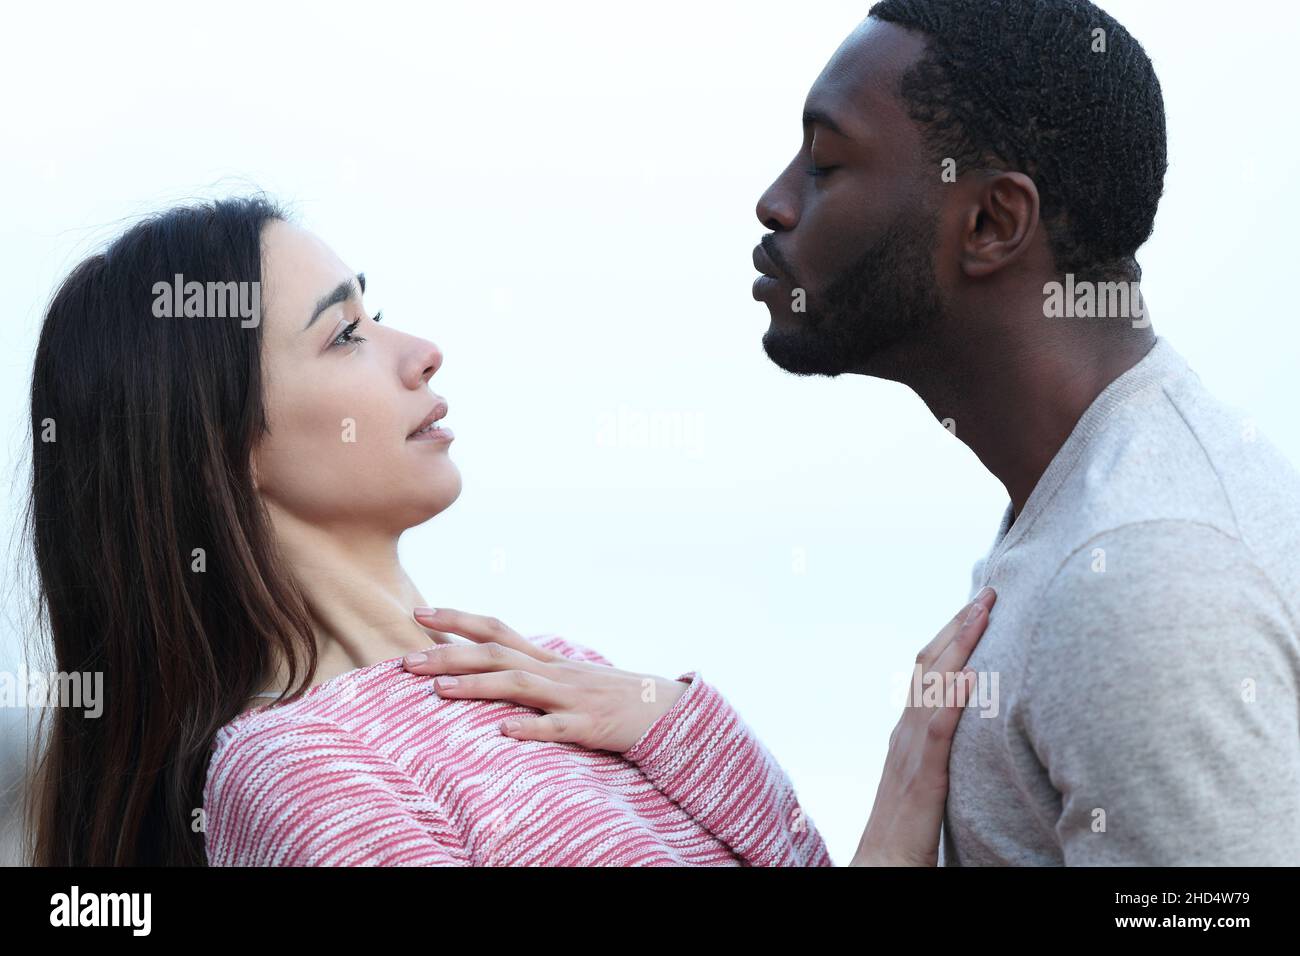 Portrait de profil d'une femme rejetant un baiser d'un homme à peau noire Banque D'Images